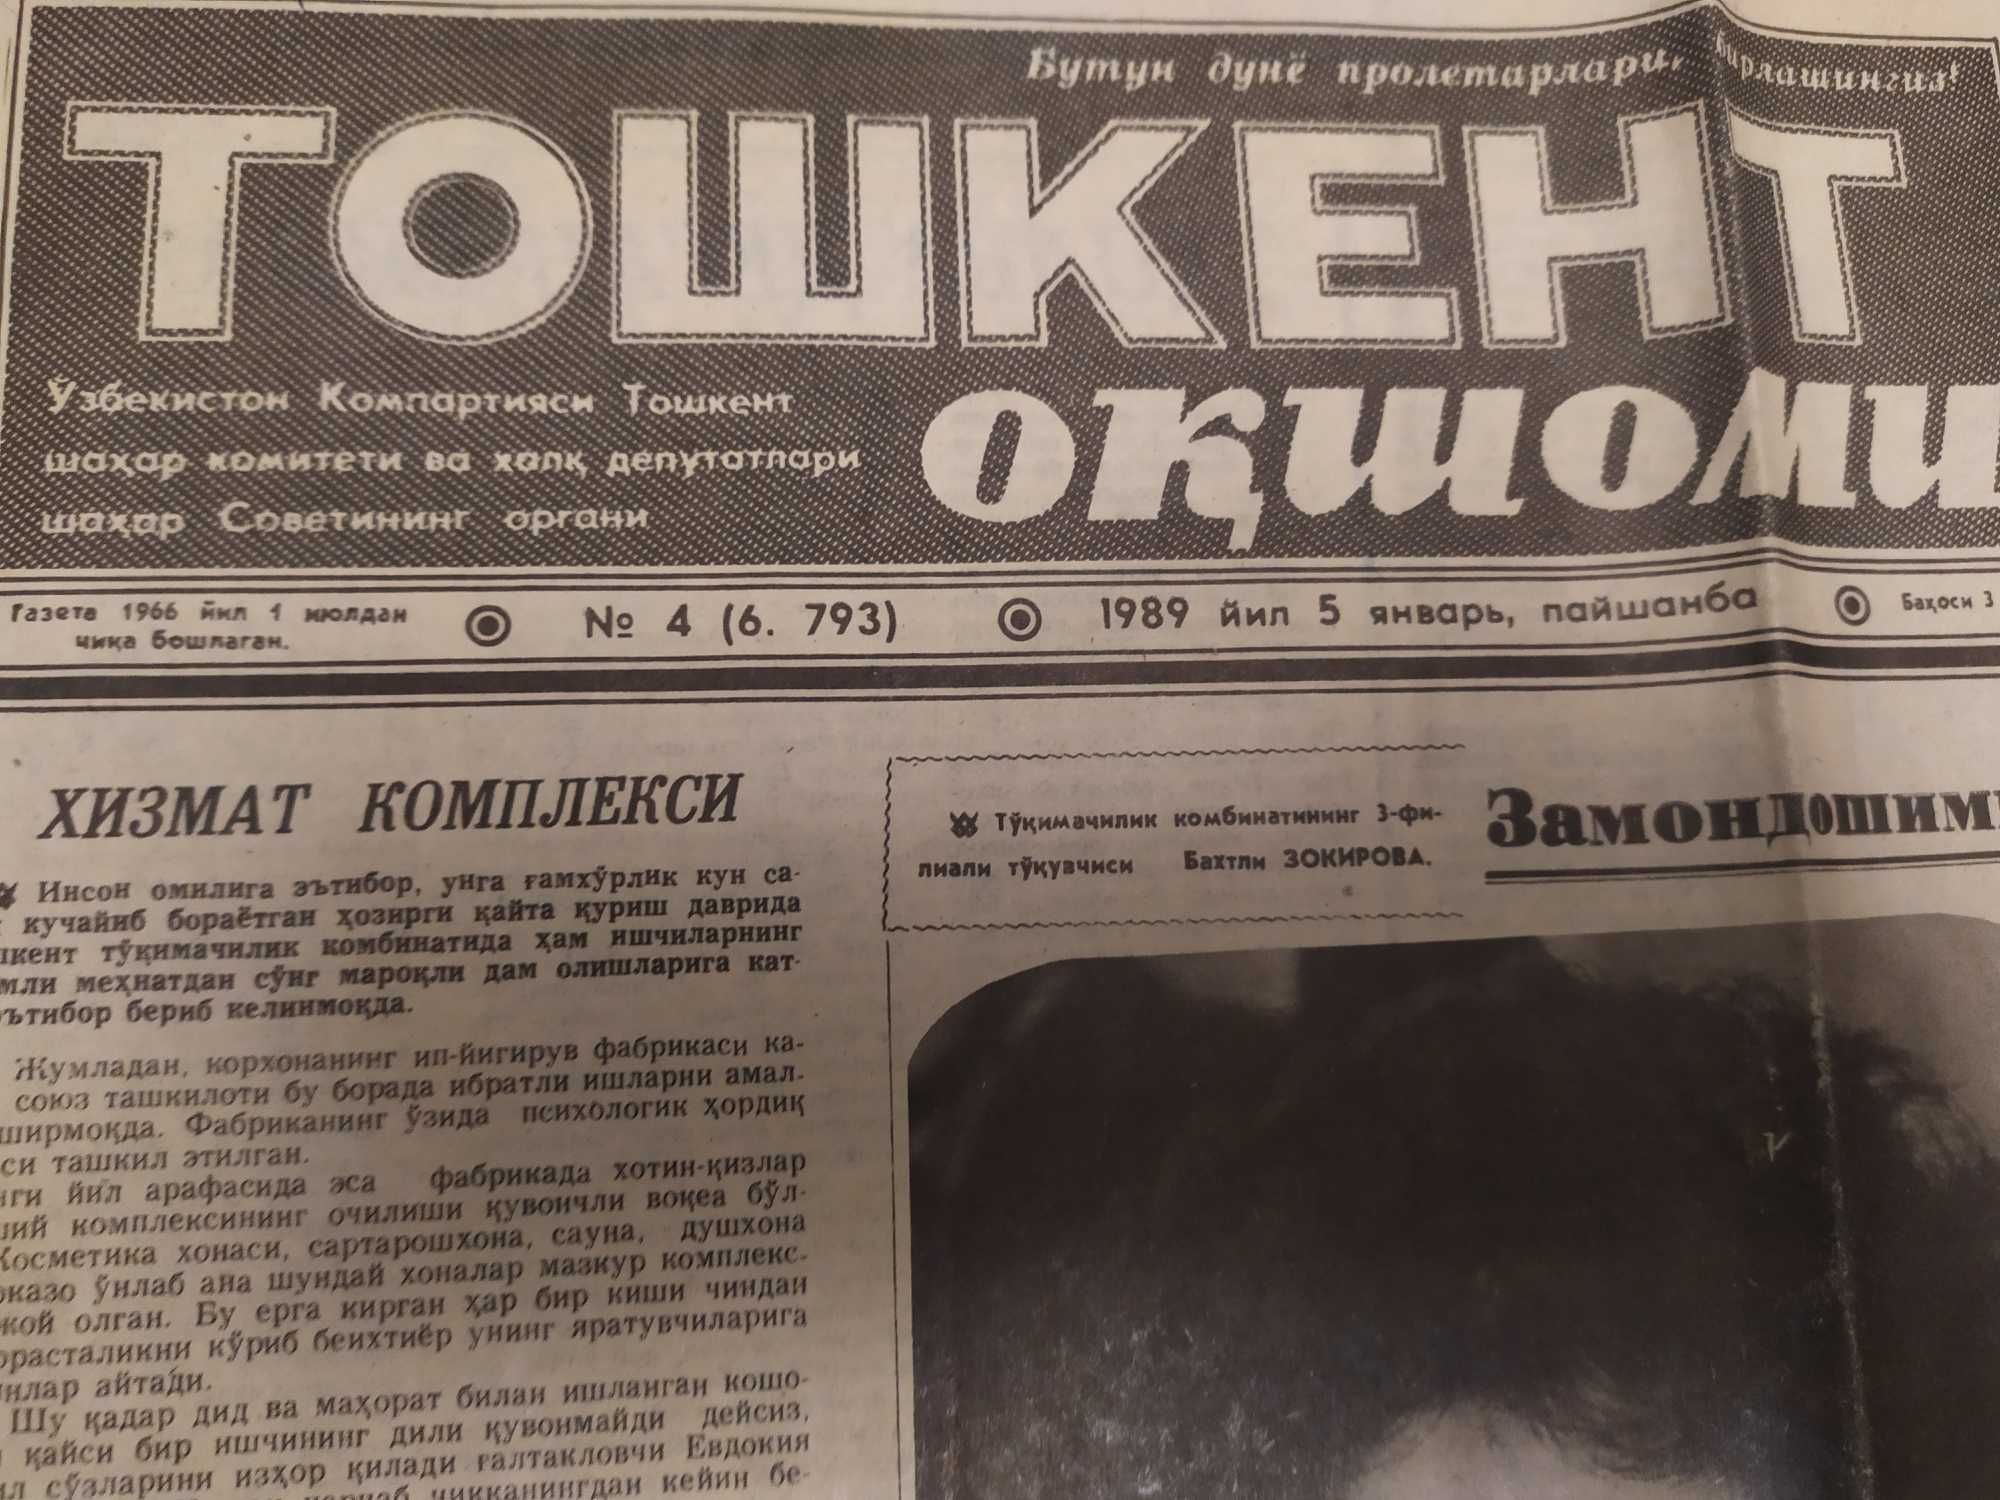 Газета "Тошкент окшоми" 4., 05 января 1989 года.